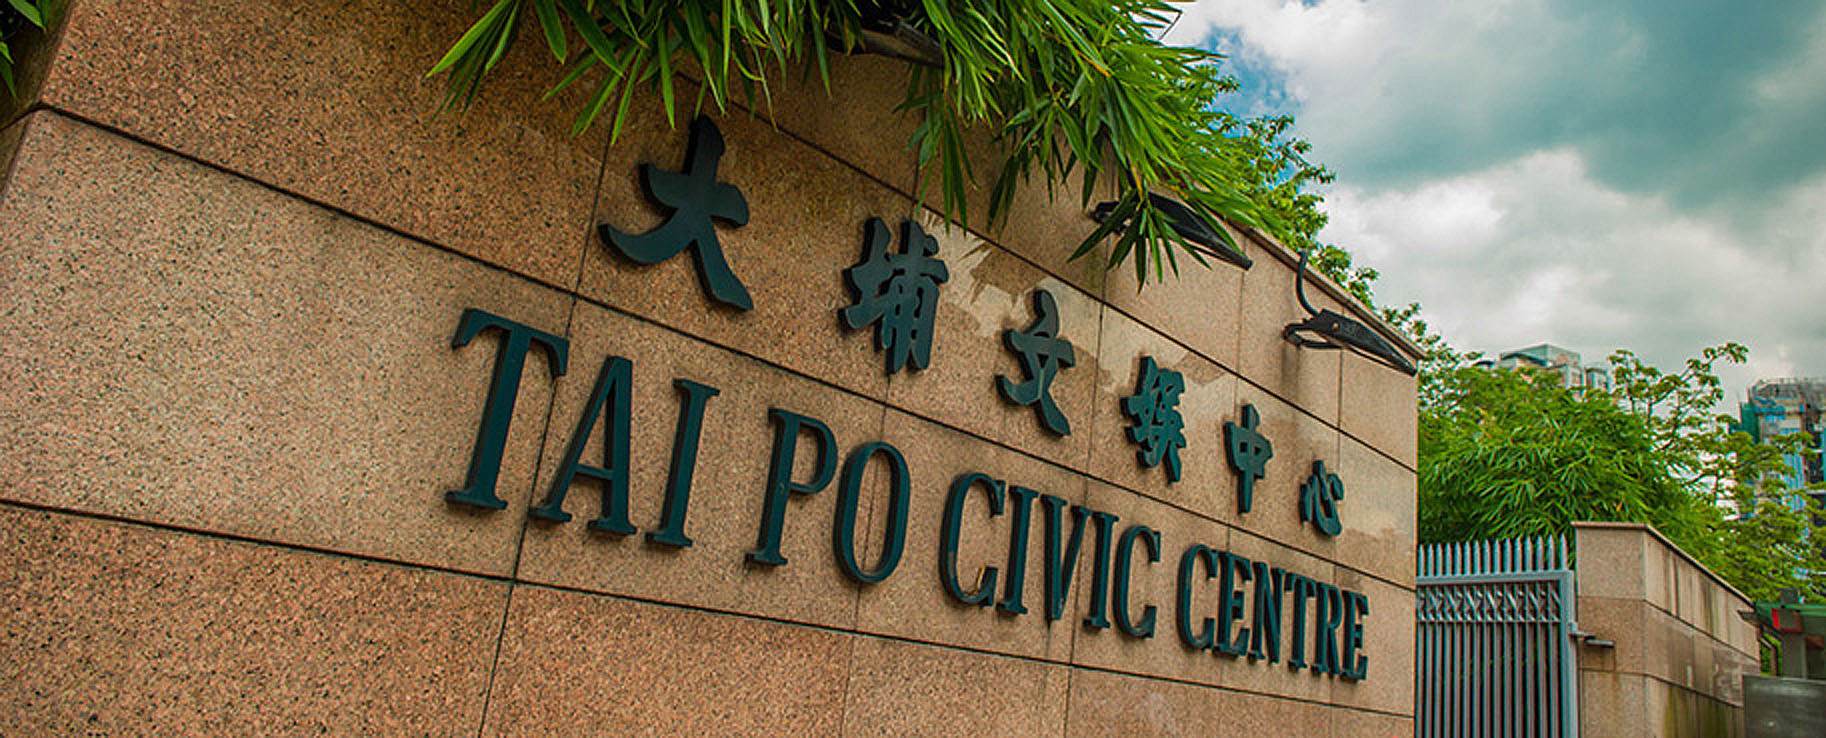 Tai Po Civic Centre